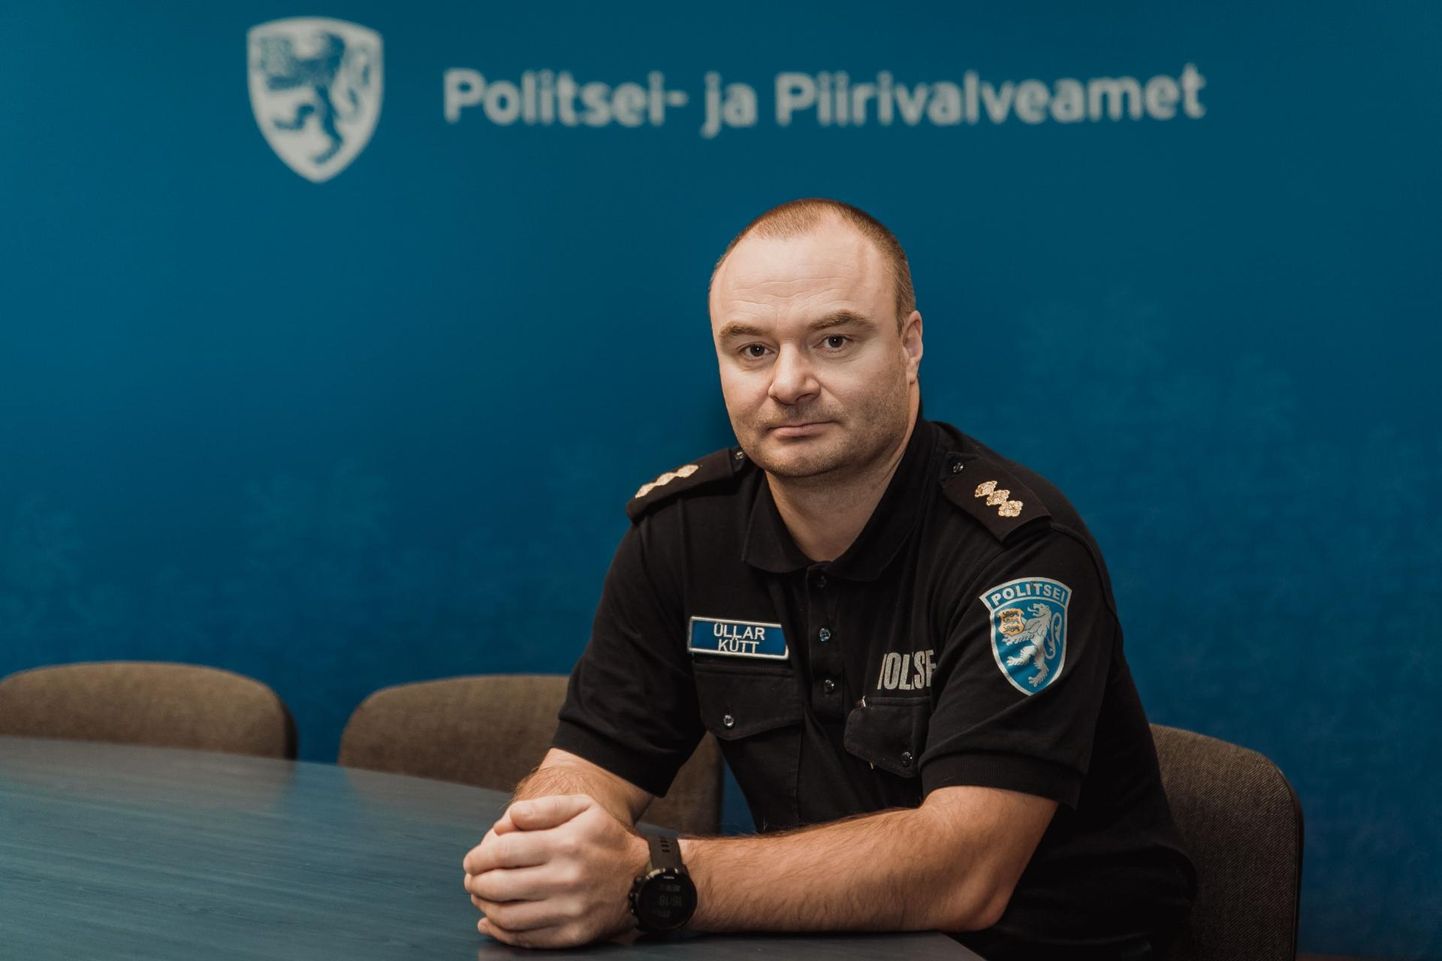 Üllar Kütt alustas 1994. aastal tööd liikluspolitseinikuna, ta on juhtinud Paide patrullitalitust ja Paide politseijaoskonda.